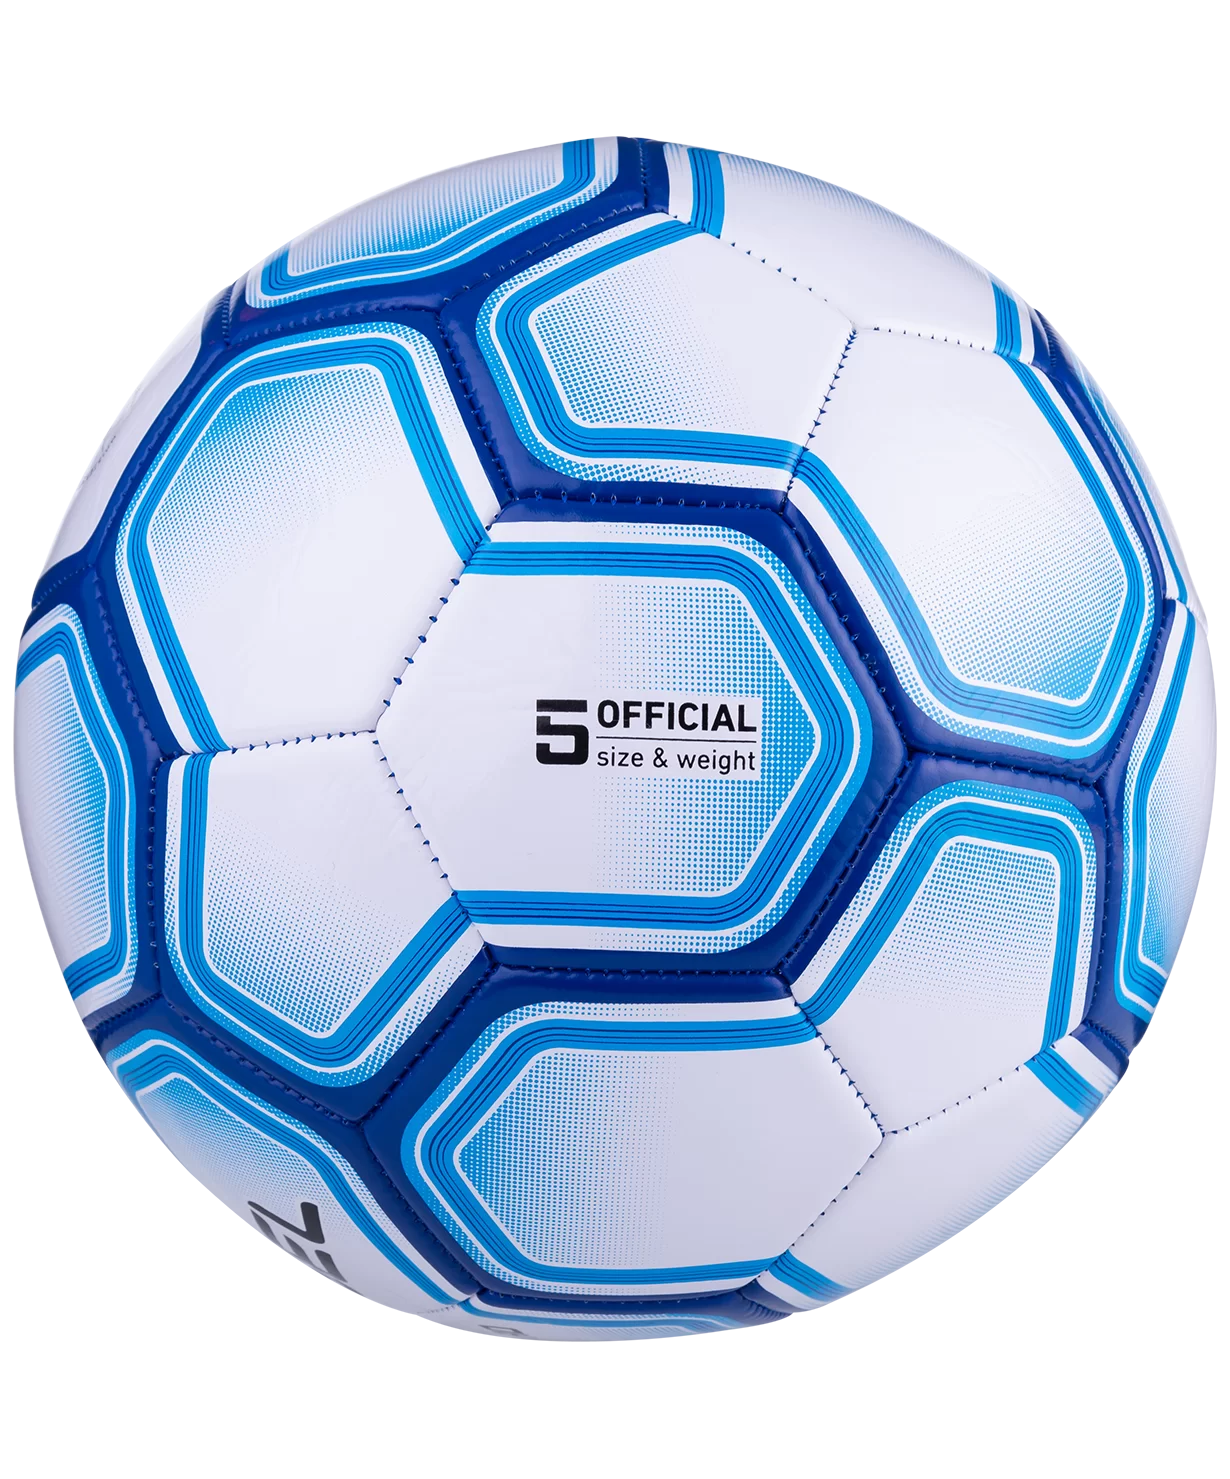 Реальное фото Мяч футбольный Jögel Intro №5 белый (BC20) УТ-00017587 от магазина СпортСЕ